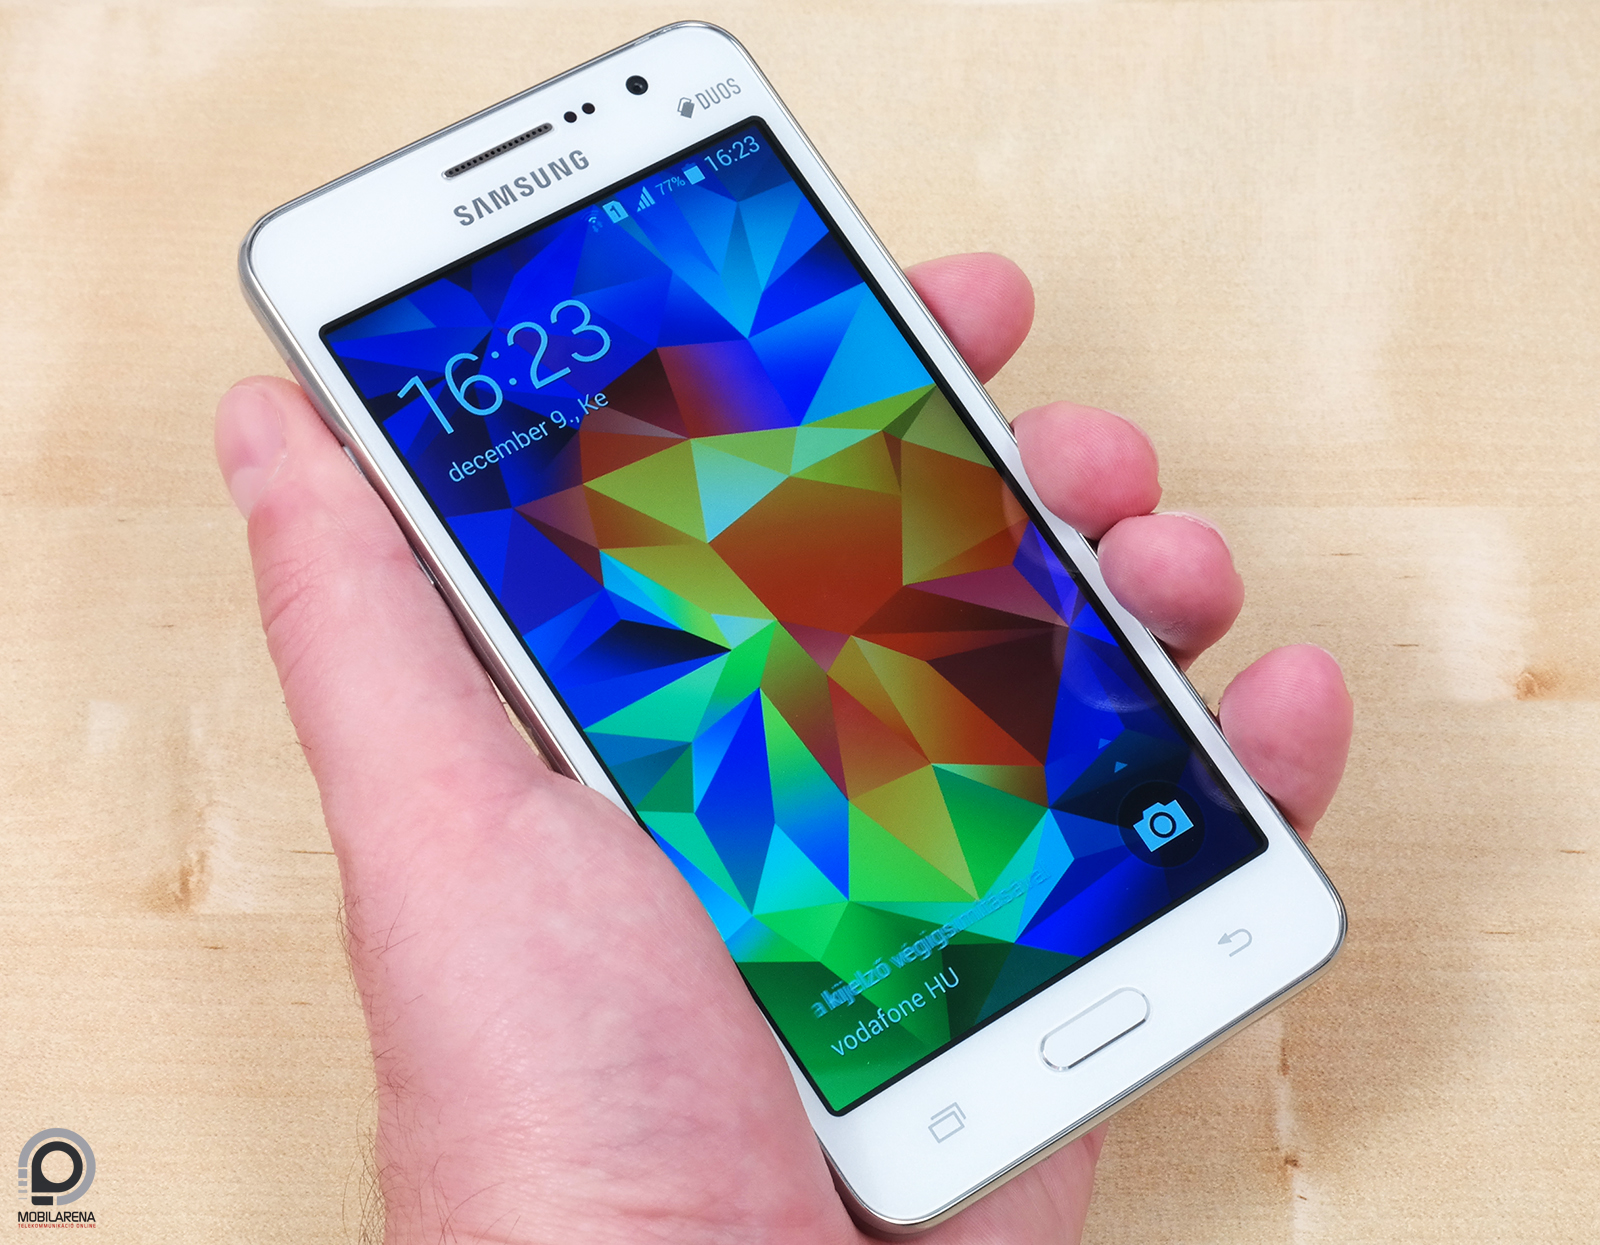 Samsung Galaxy Grand Prime DuoS - növekedés 64 bitre - Mobilarena  Okostelefon teszt - Nyomtatóbarát verzió